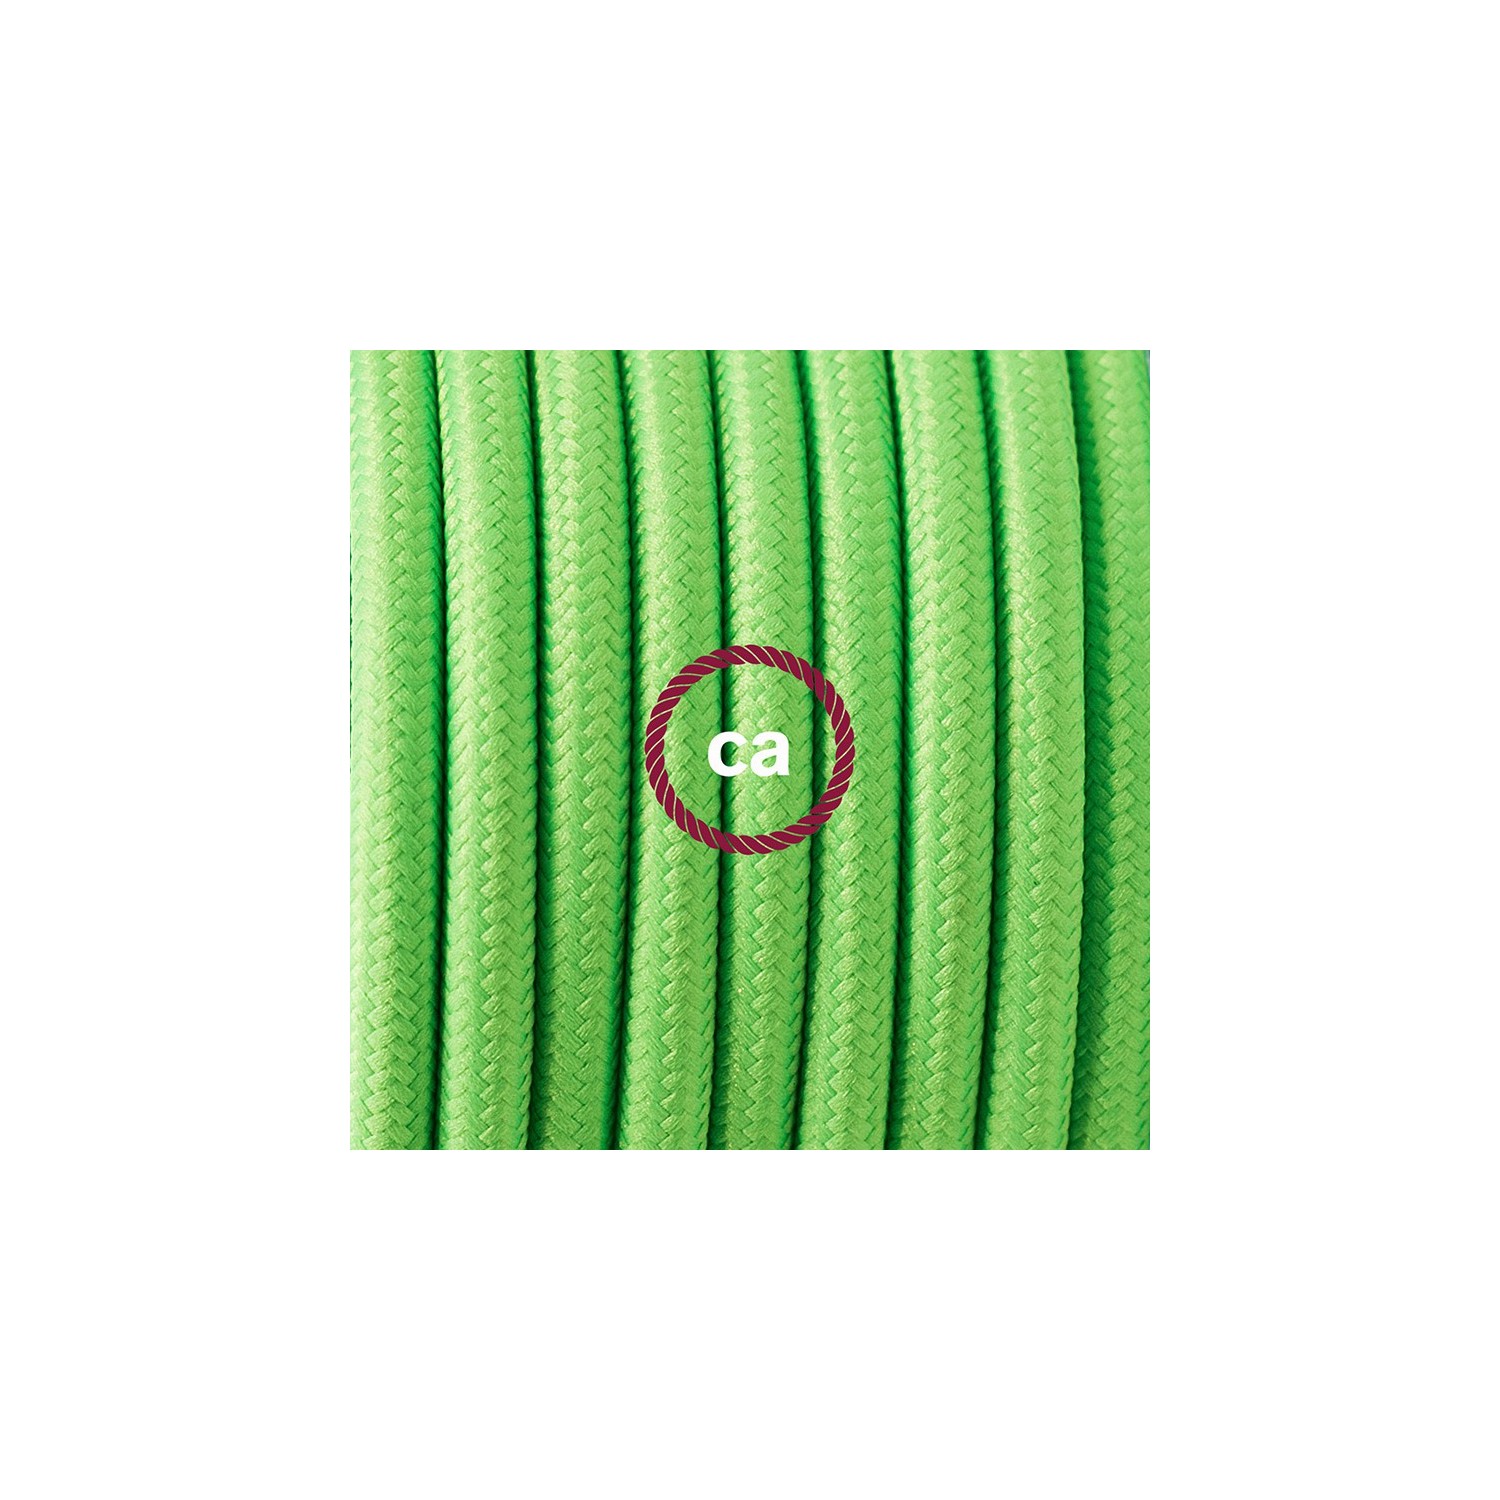 Ronde flexibele textielkabel van viscose met schakelaar en stekker. RF06 - groen fluo 1,80 m.